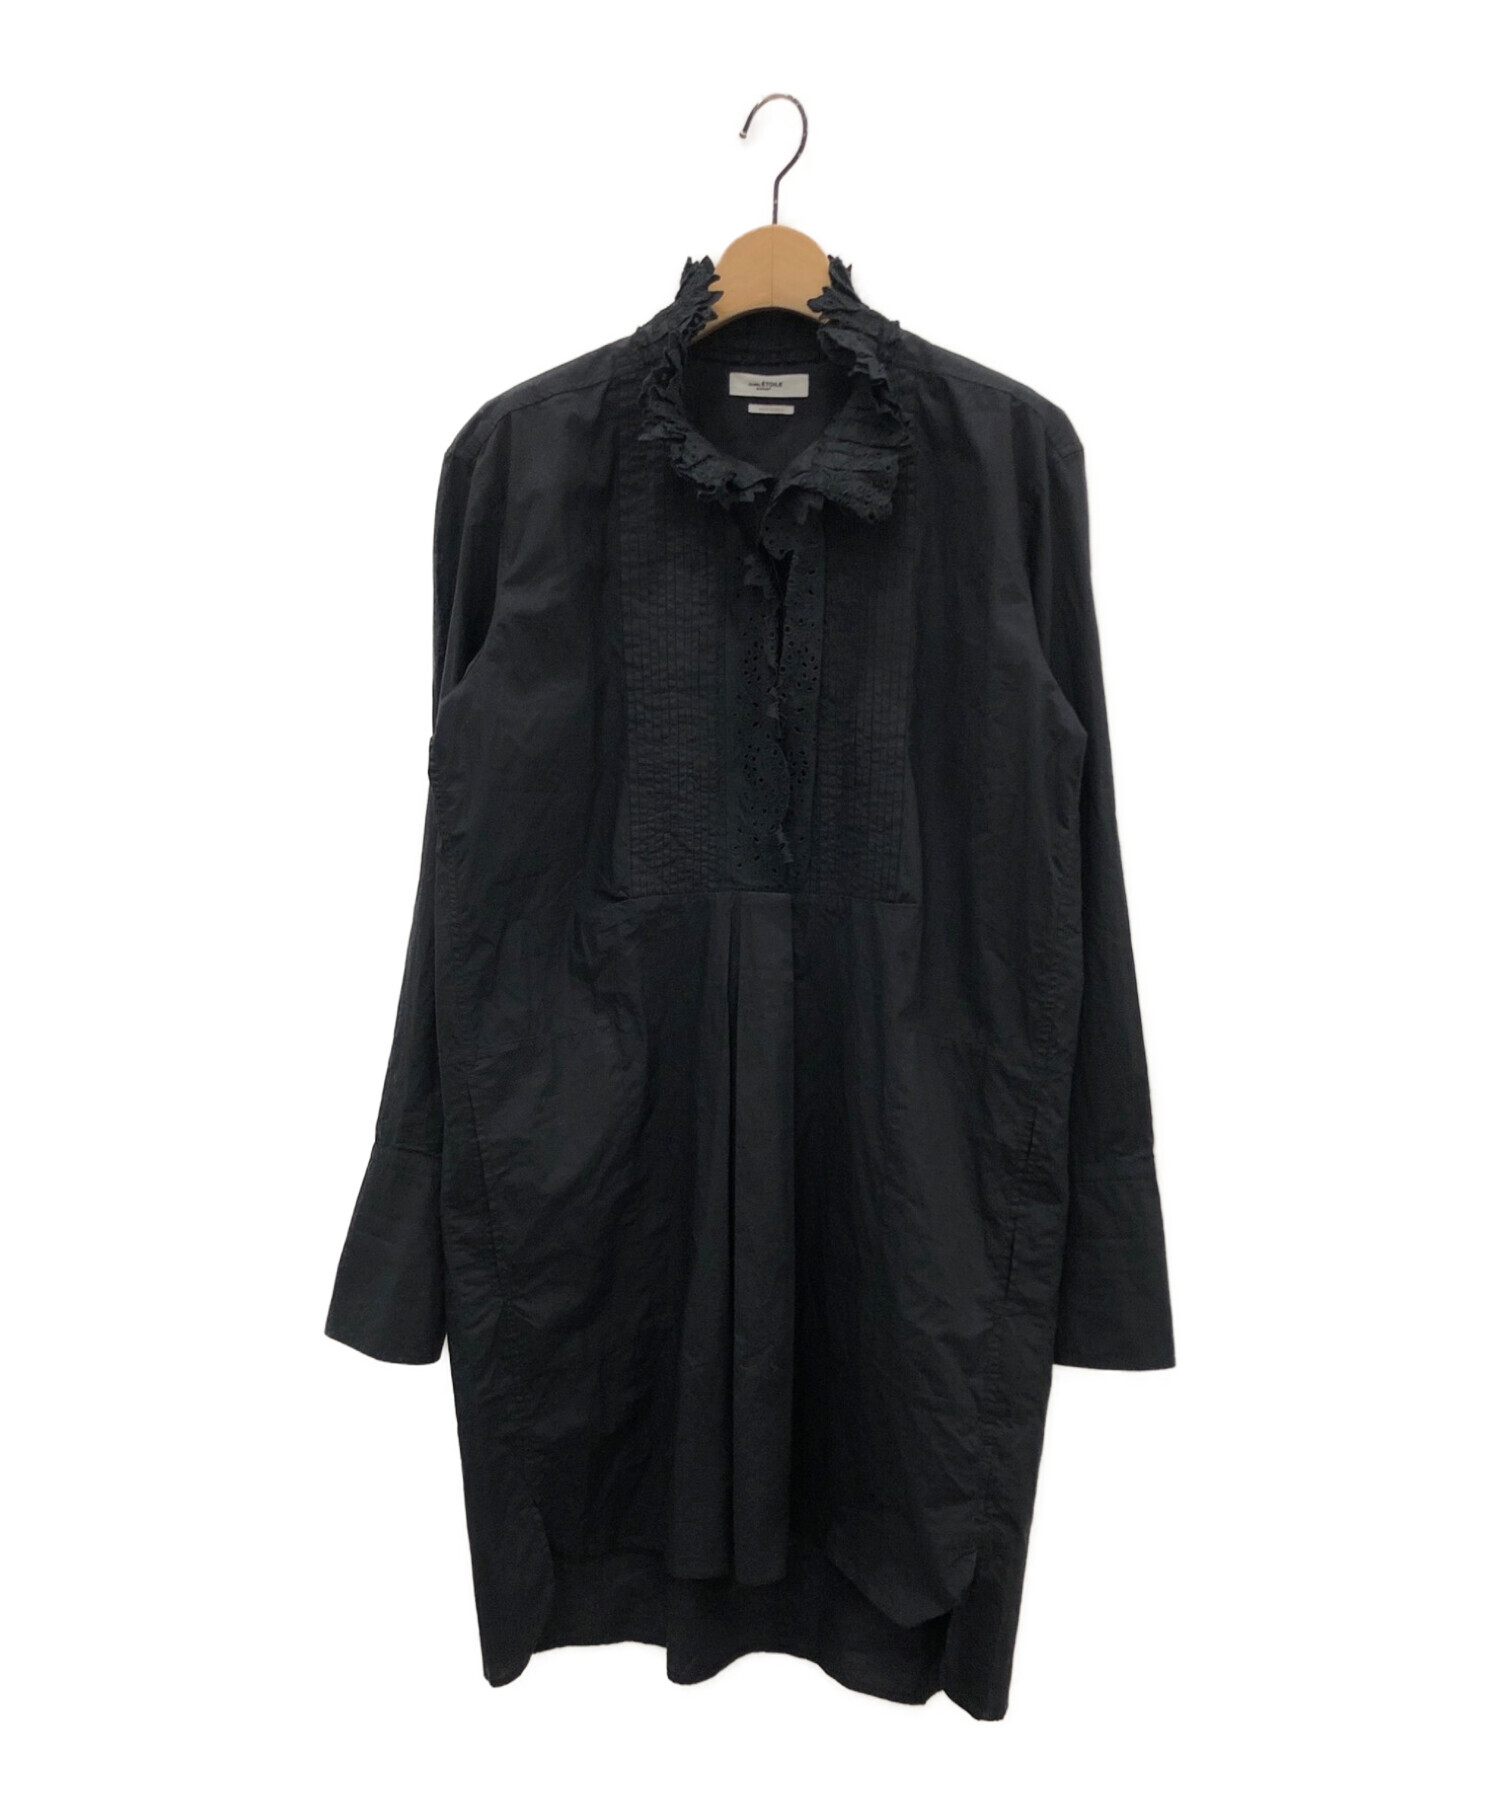 ISABEL MARANT ETOILE (イザベルマランエトワール) CABORA EMBROIDED SHIRT-DRESS ブラック サイズ:36